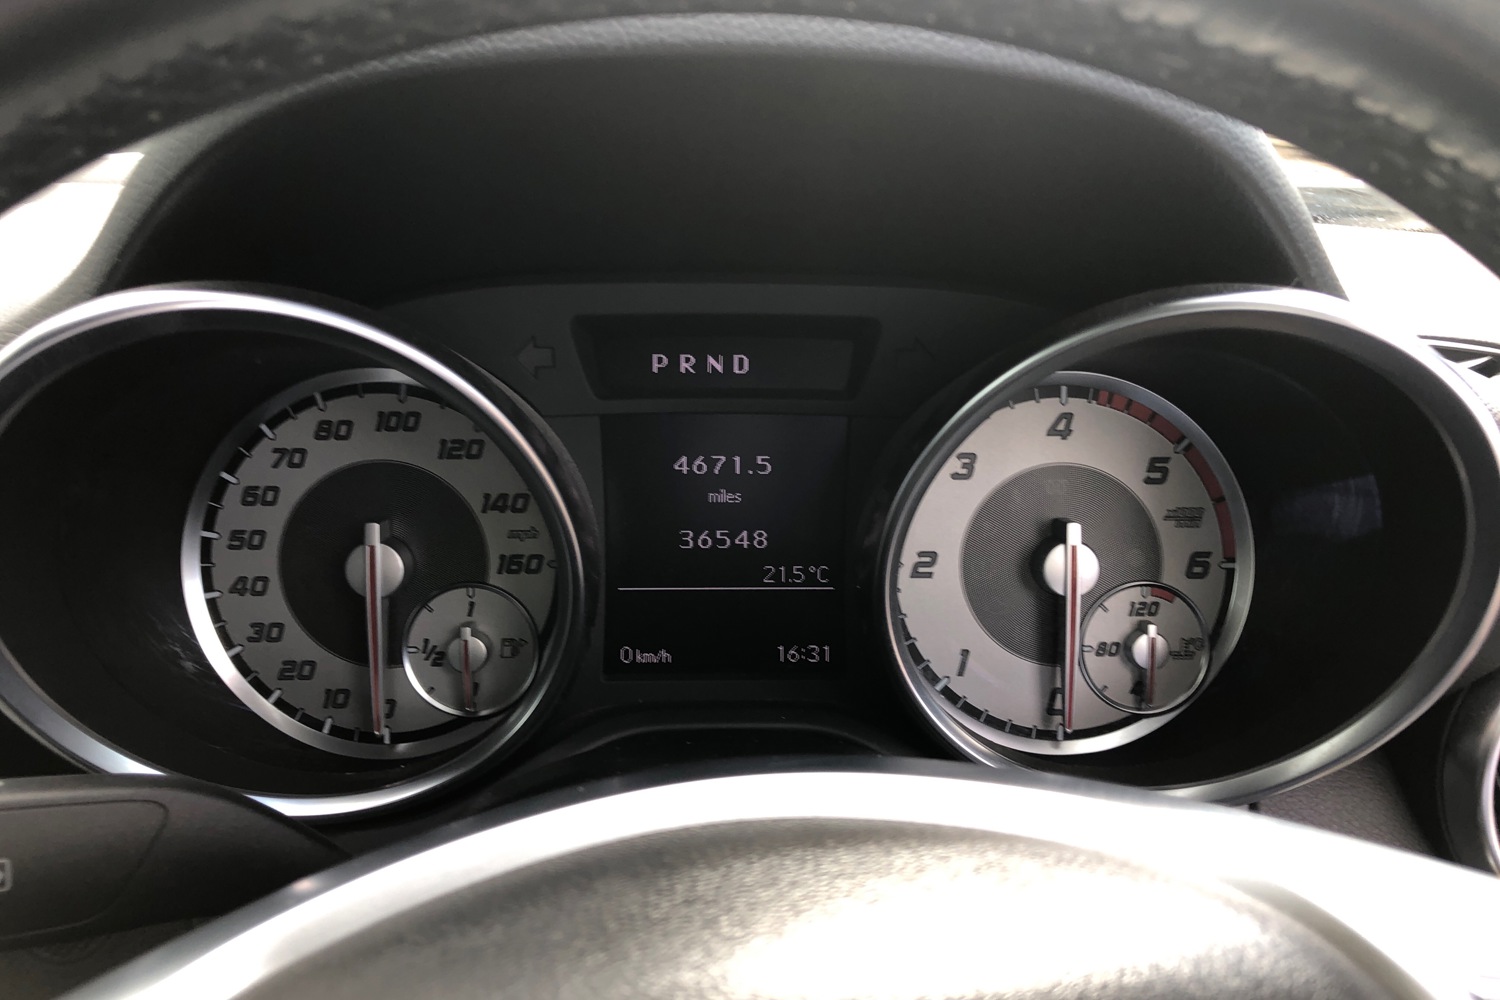 Mercedes SLK R171 lights on speedometer repair